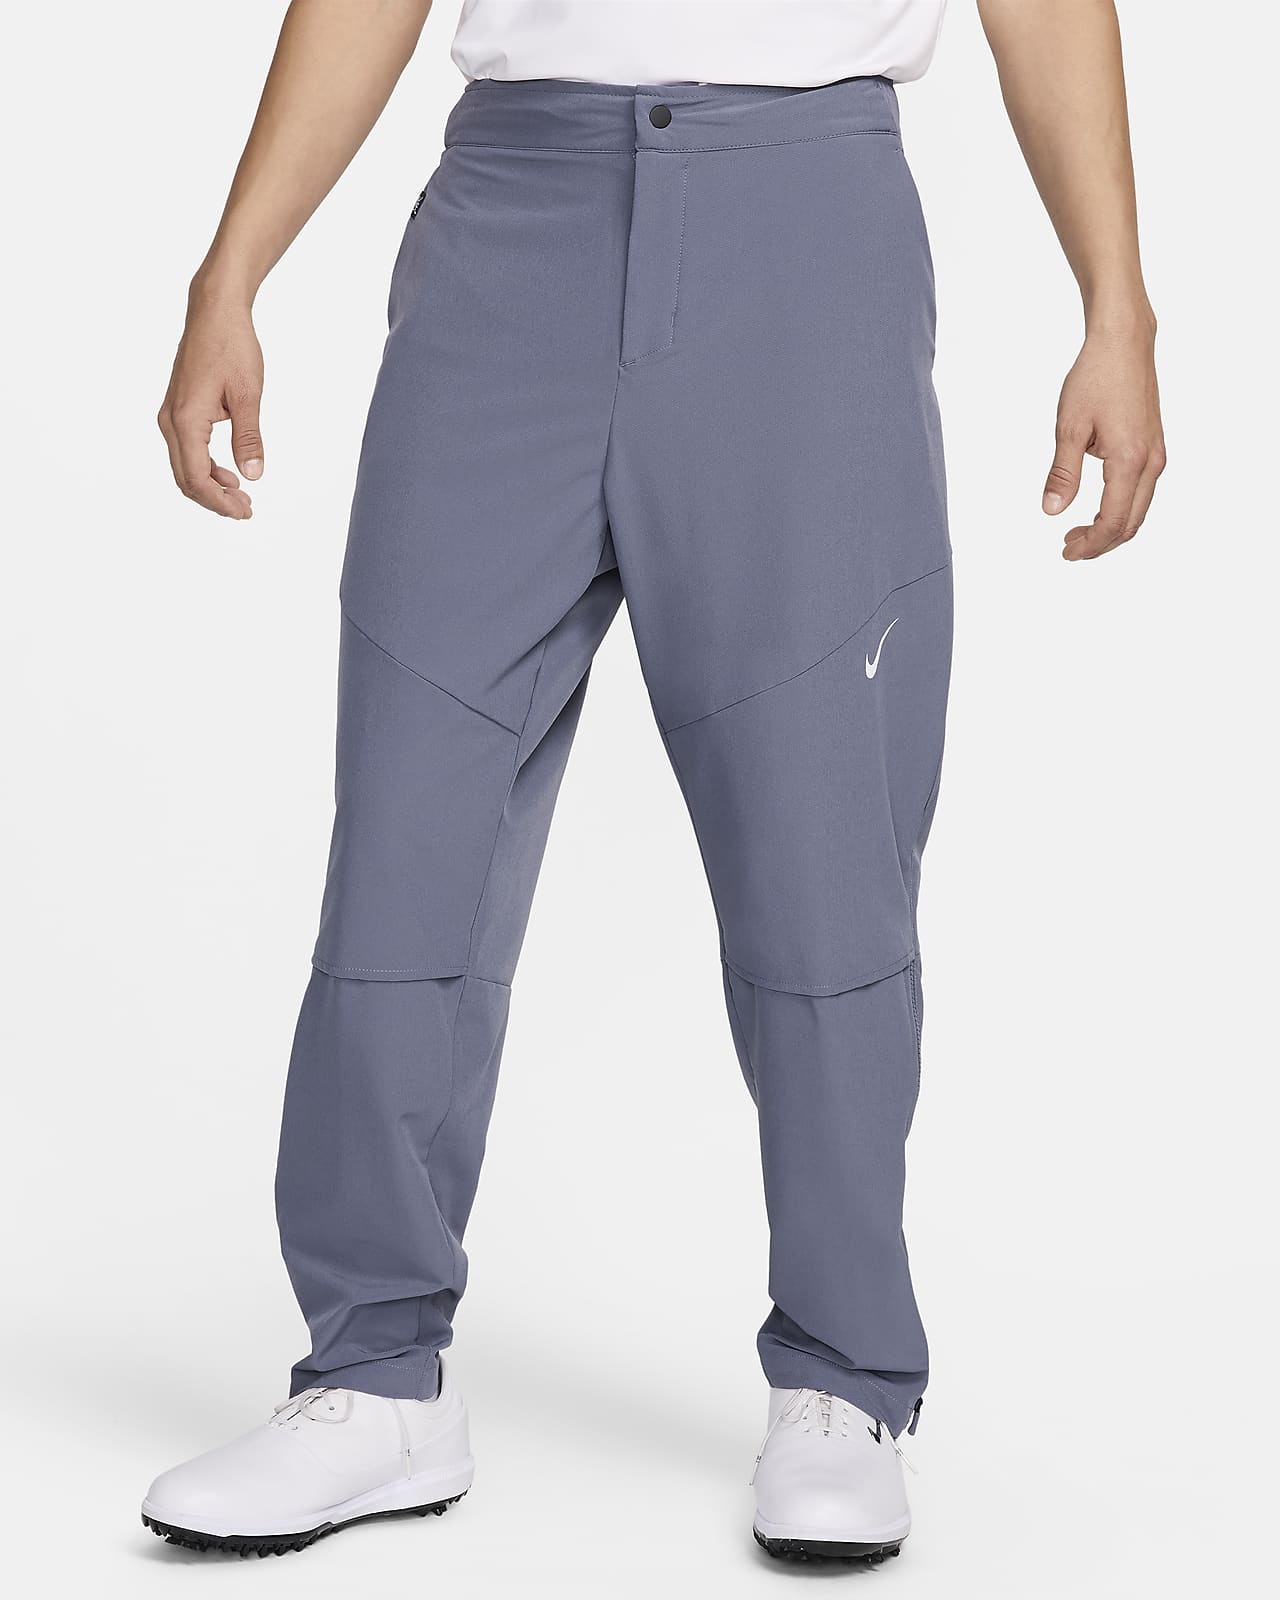 Pants de golf Dri-FIT para hombre Nike Golf Club